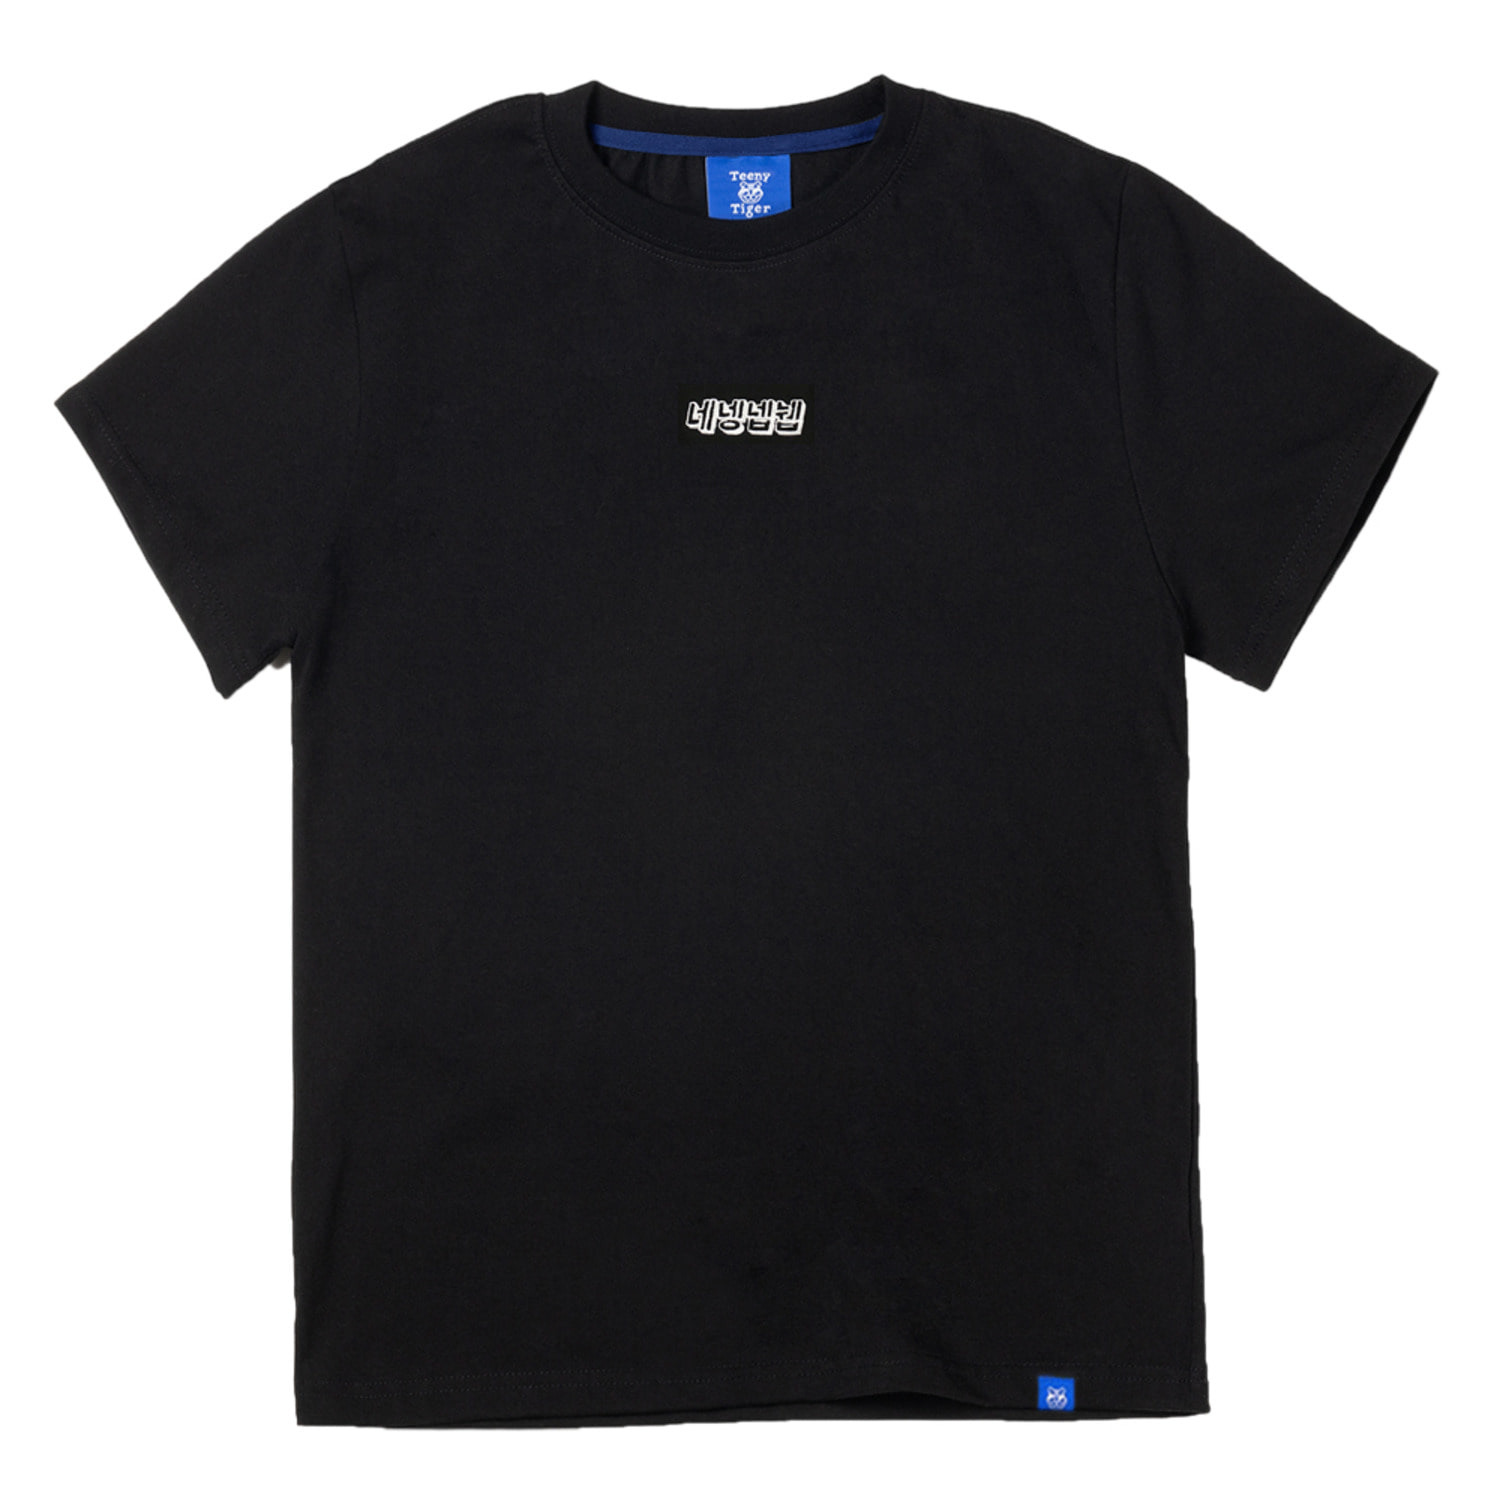 네넹넵뉍 반팔 티셔츠 블랙 YES Korean SS tshirt (Black)